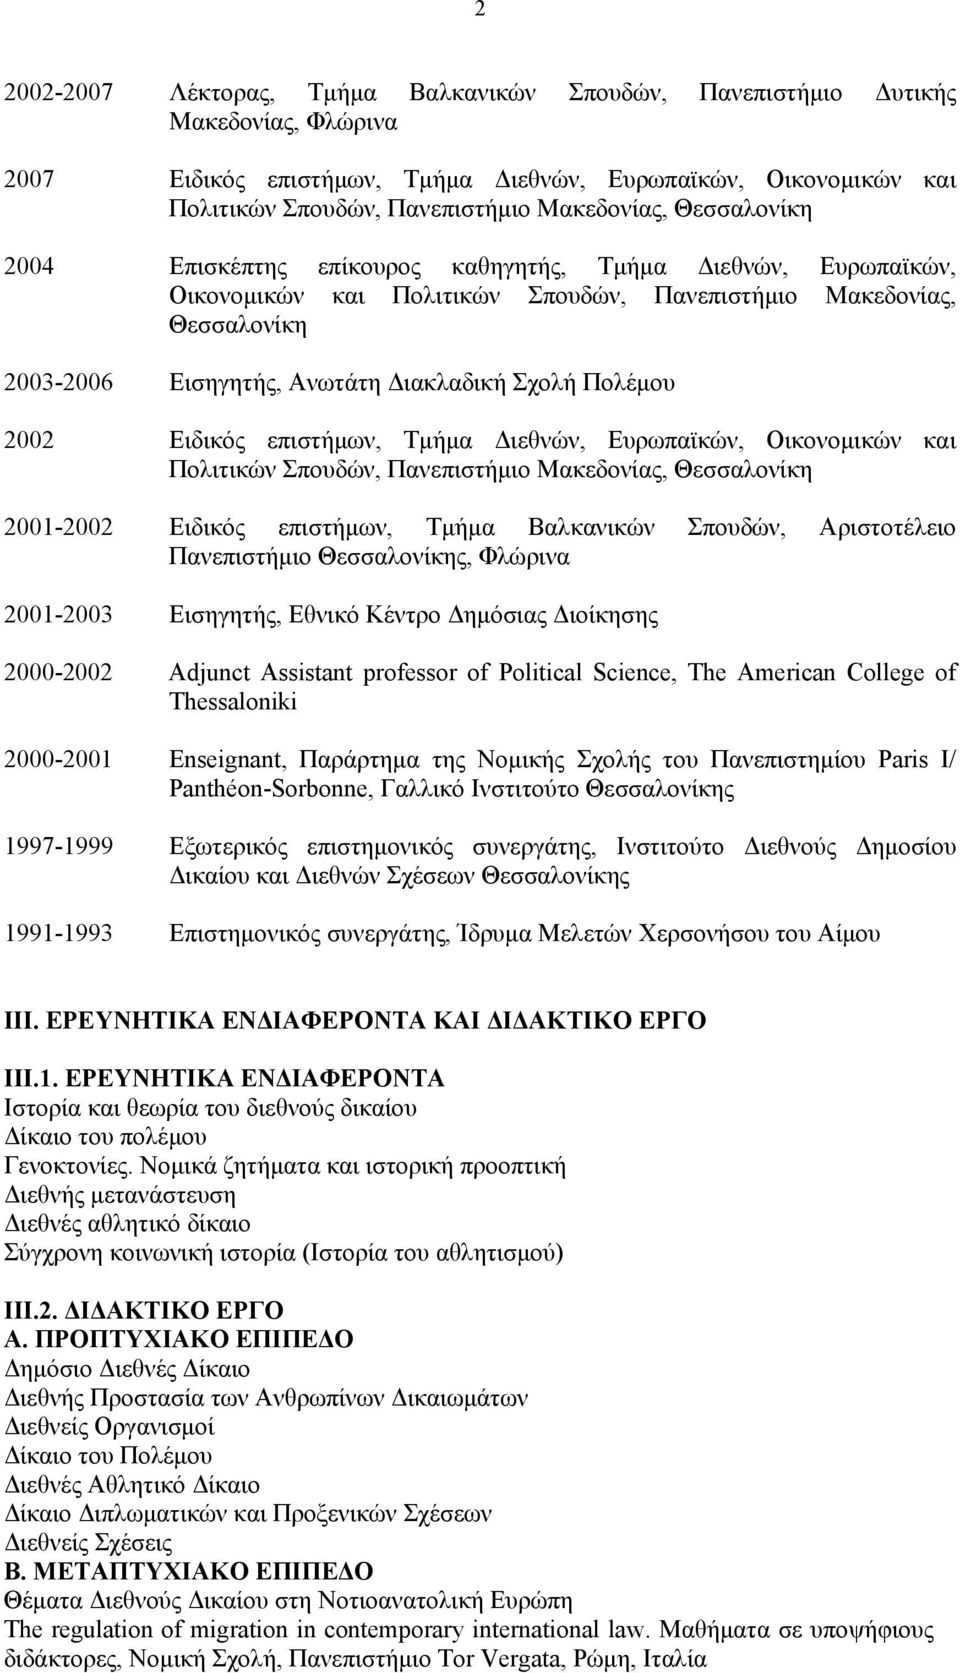 Πολέμου 2002 Ειδικός επιστήμων, Τμήμα Διεθνών, Ευρωπαϊκών, Οικονομικών και Πολιτικών Σπουδών, Πανεπιστήμιο Μακεδονίας, Θεσσαλονίκη 2001-2002 Ειδικός επιστήμων, Τμήμα Βαλκανικών Σπουδών, Αριστοτέλειο